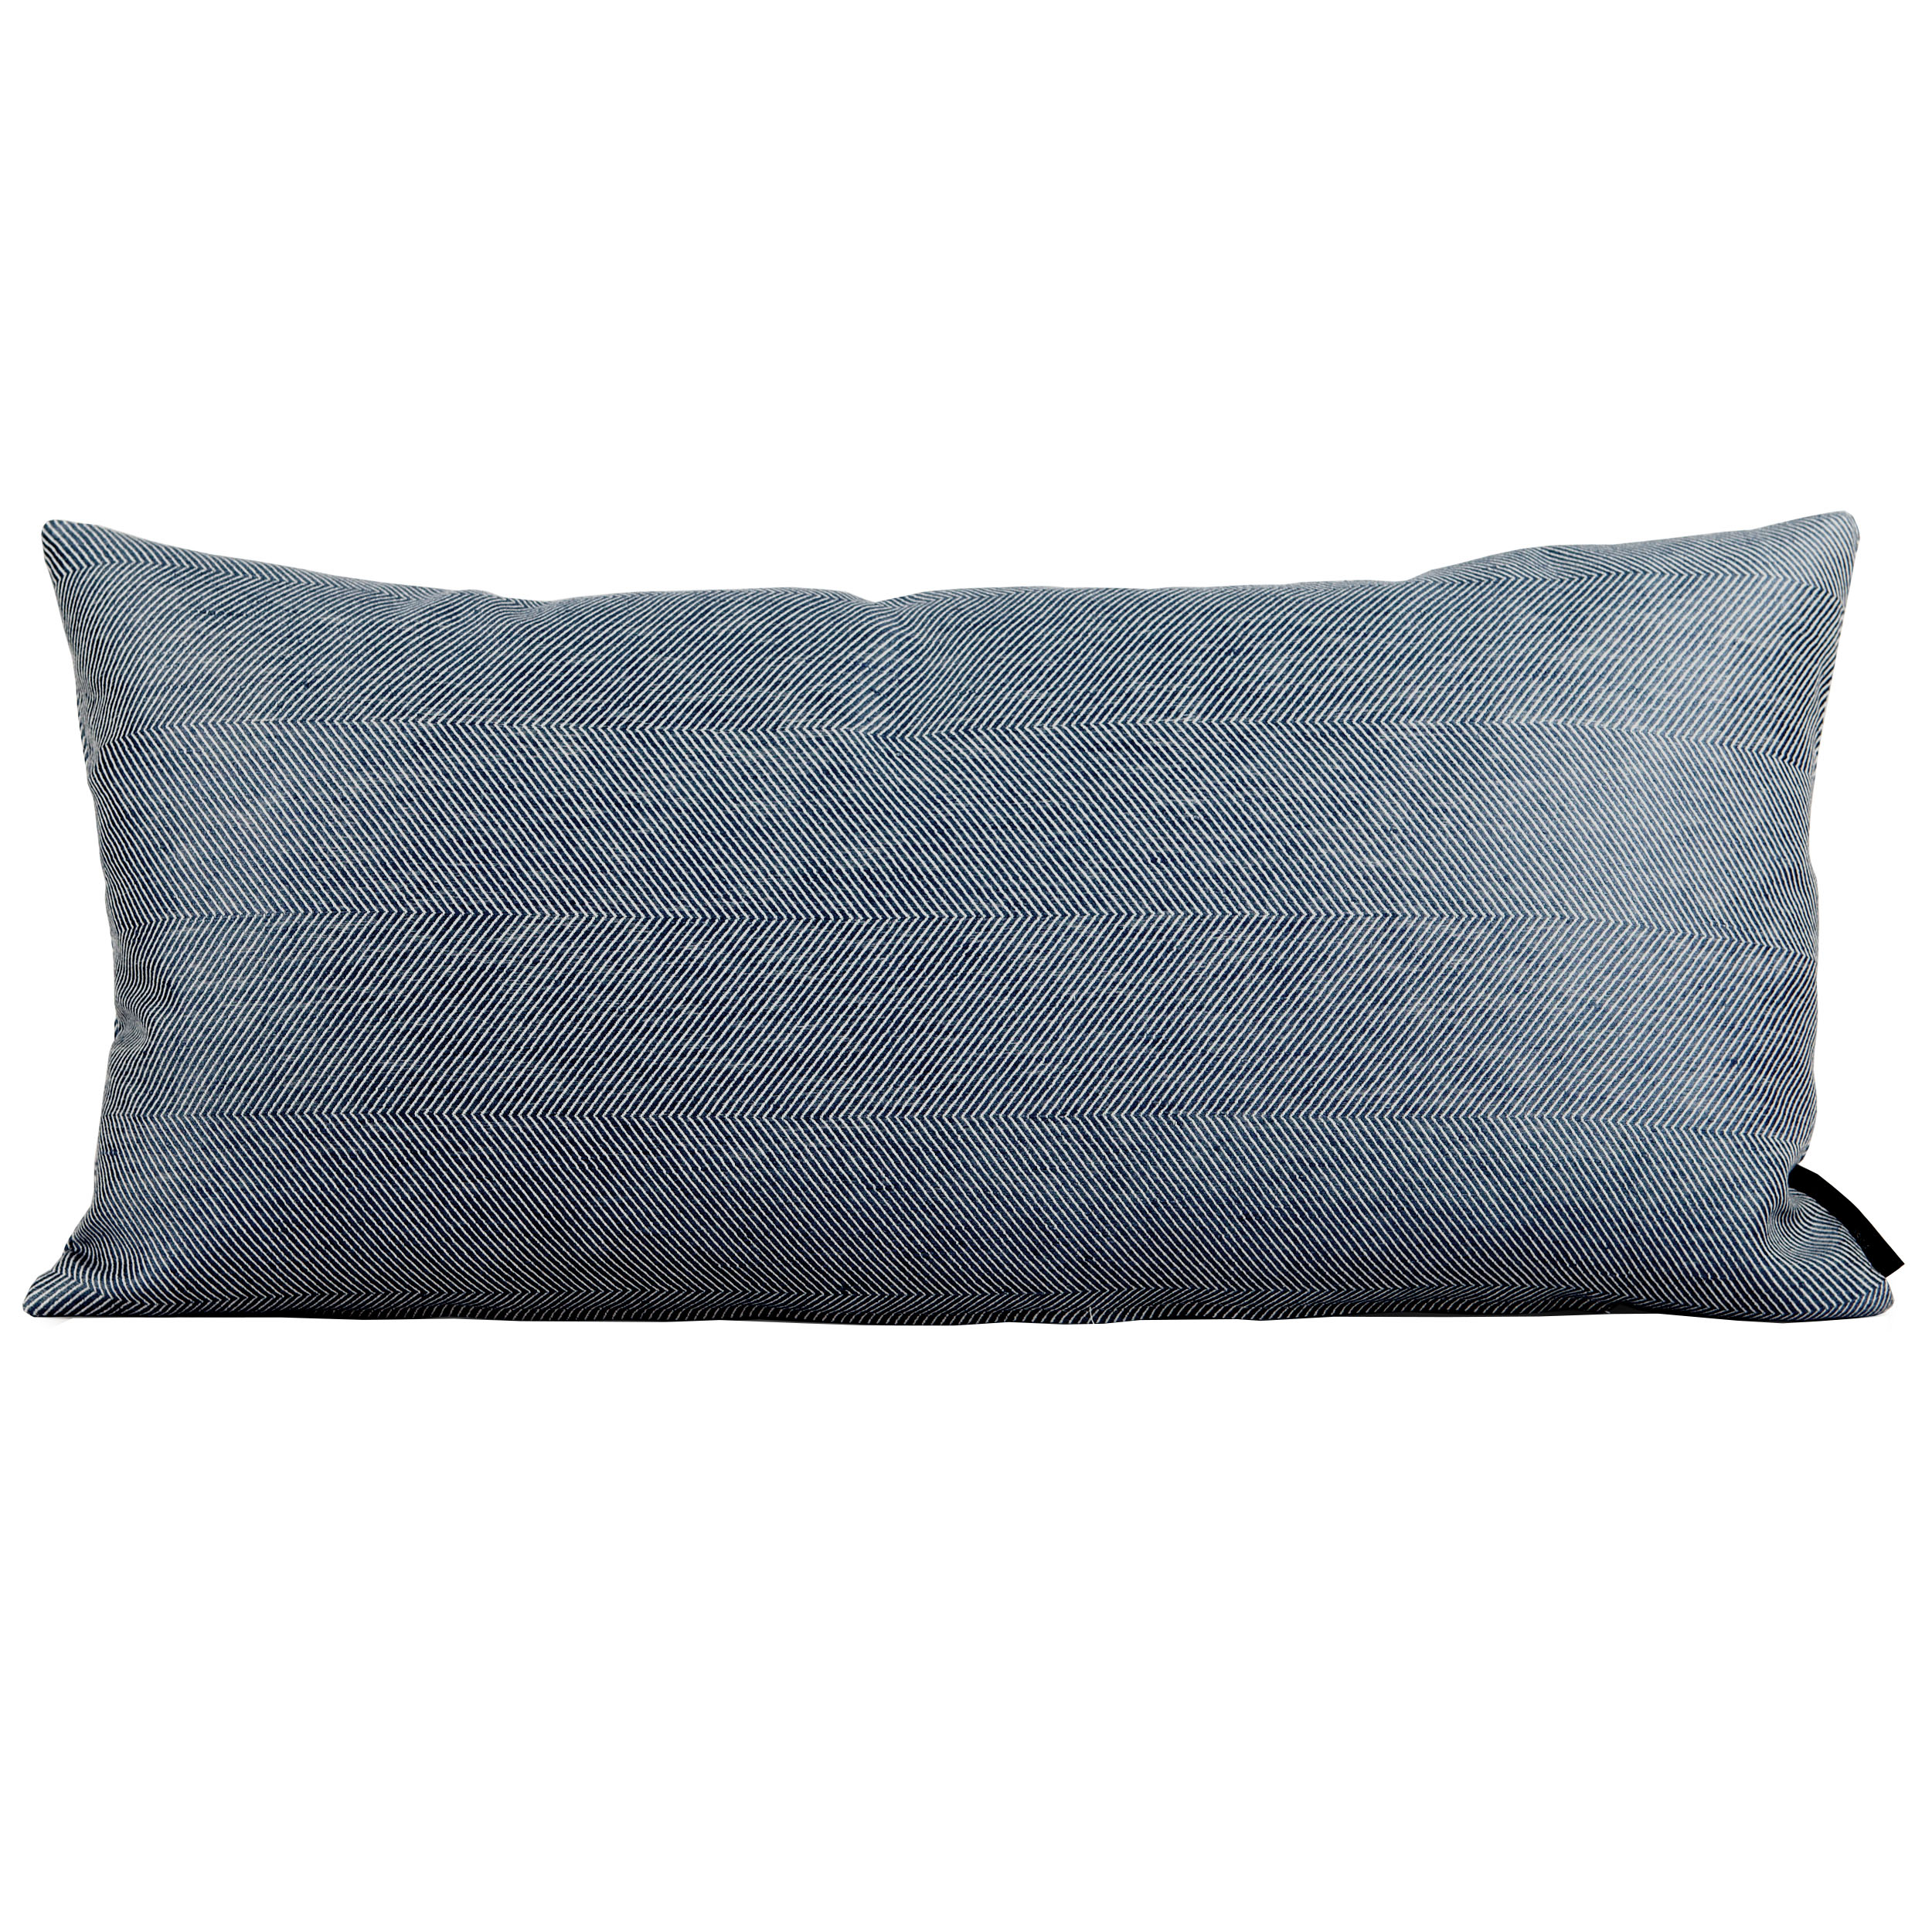 Rectangular cushion linen/cotton indigo blue design by Anne Rosenberg, RosenbergCph